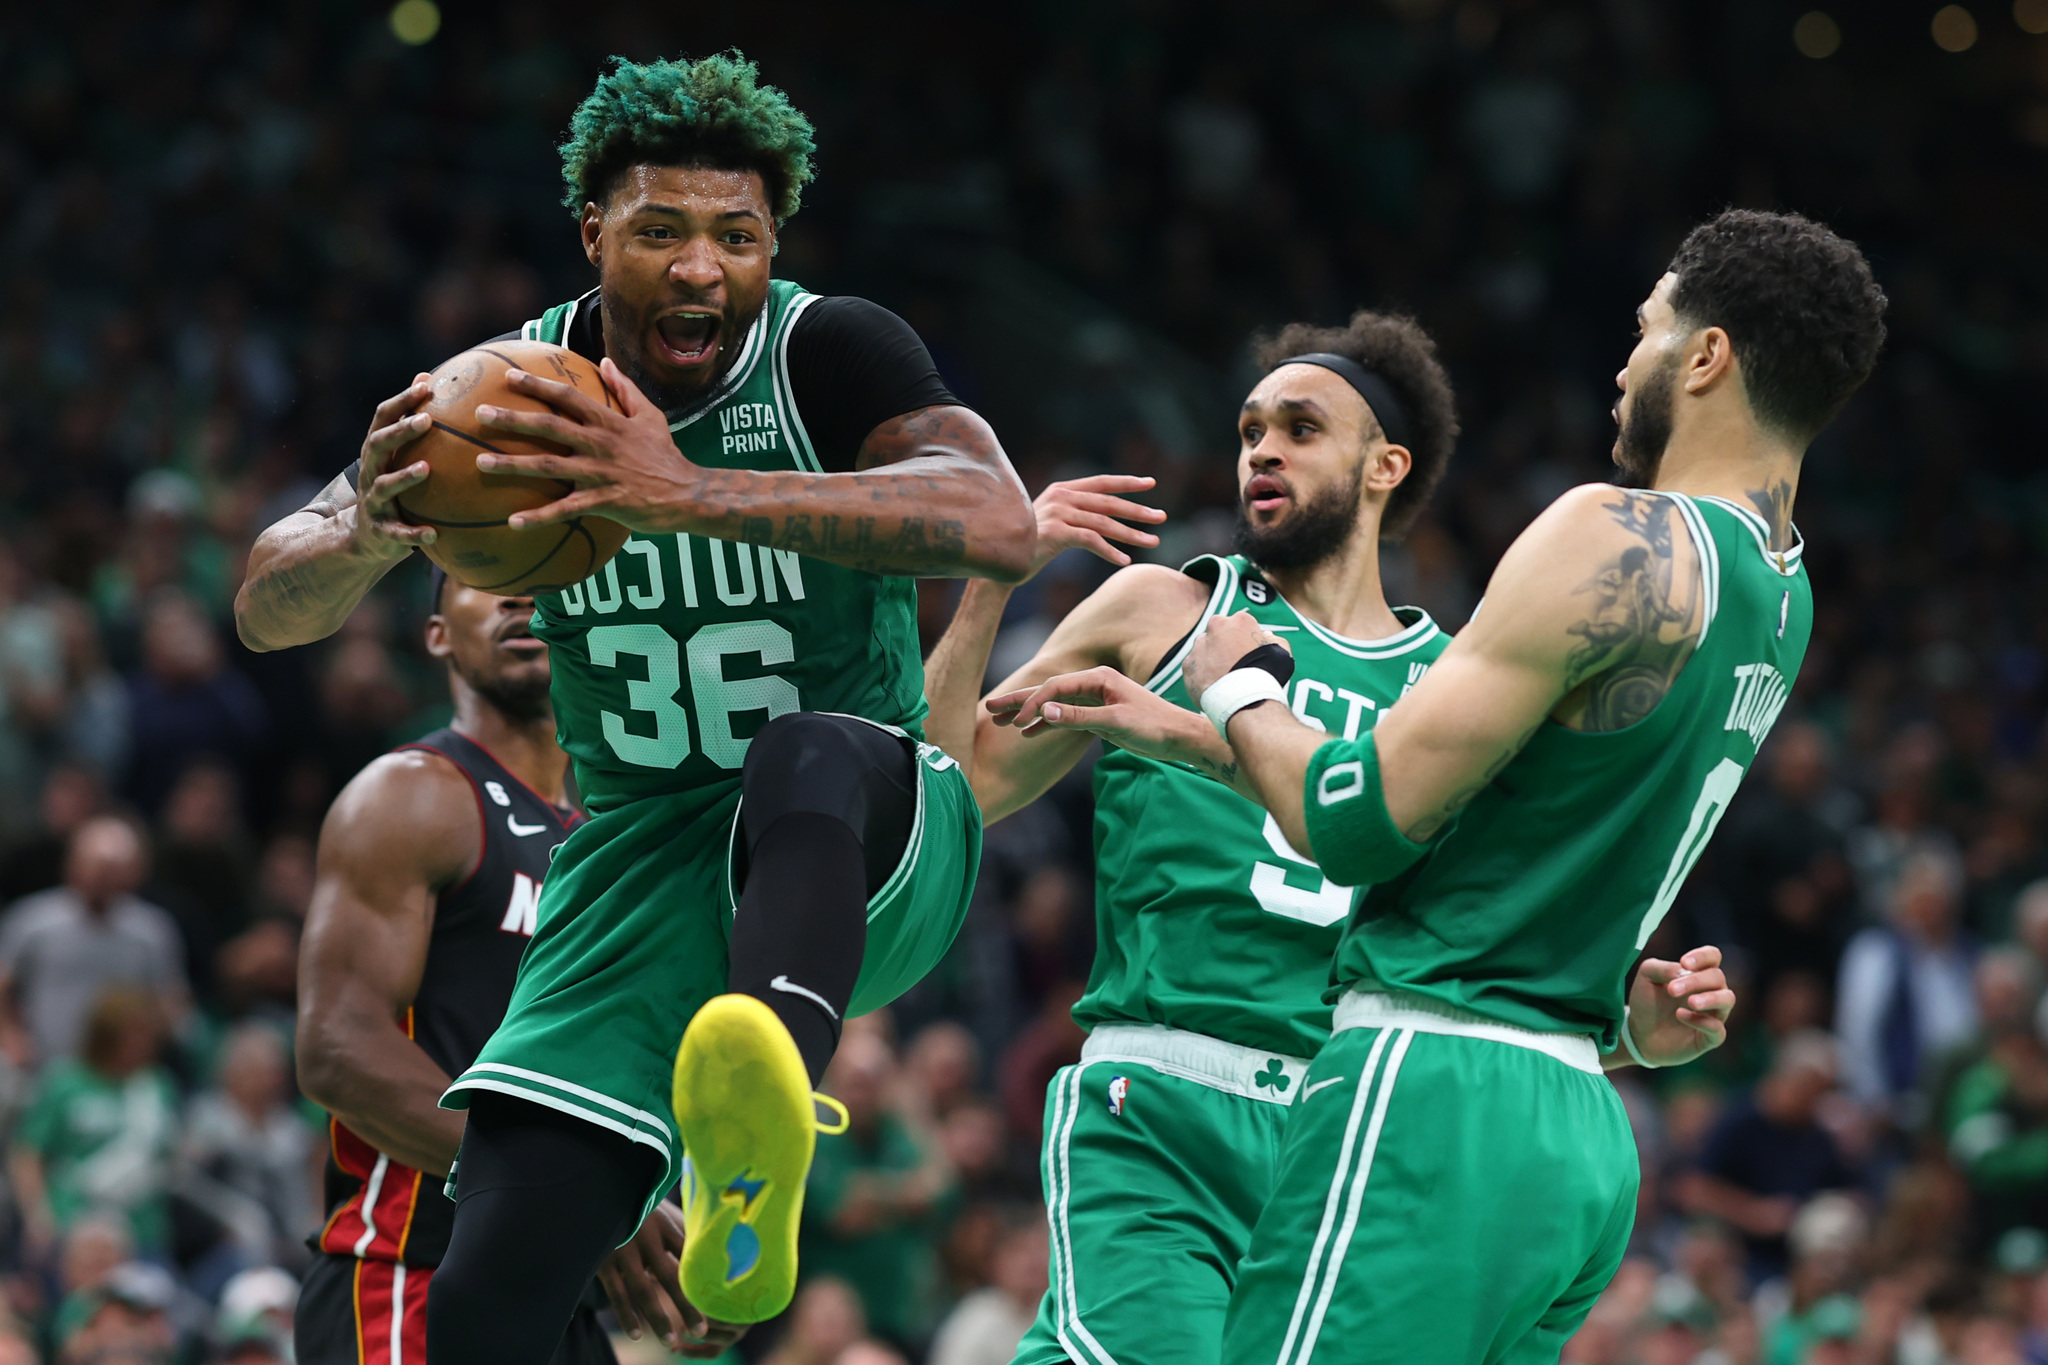 ¿Remontada imposible para los Celtics? Los otros precedentes del deporte estadounidense